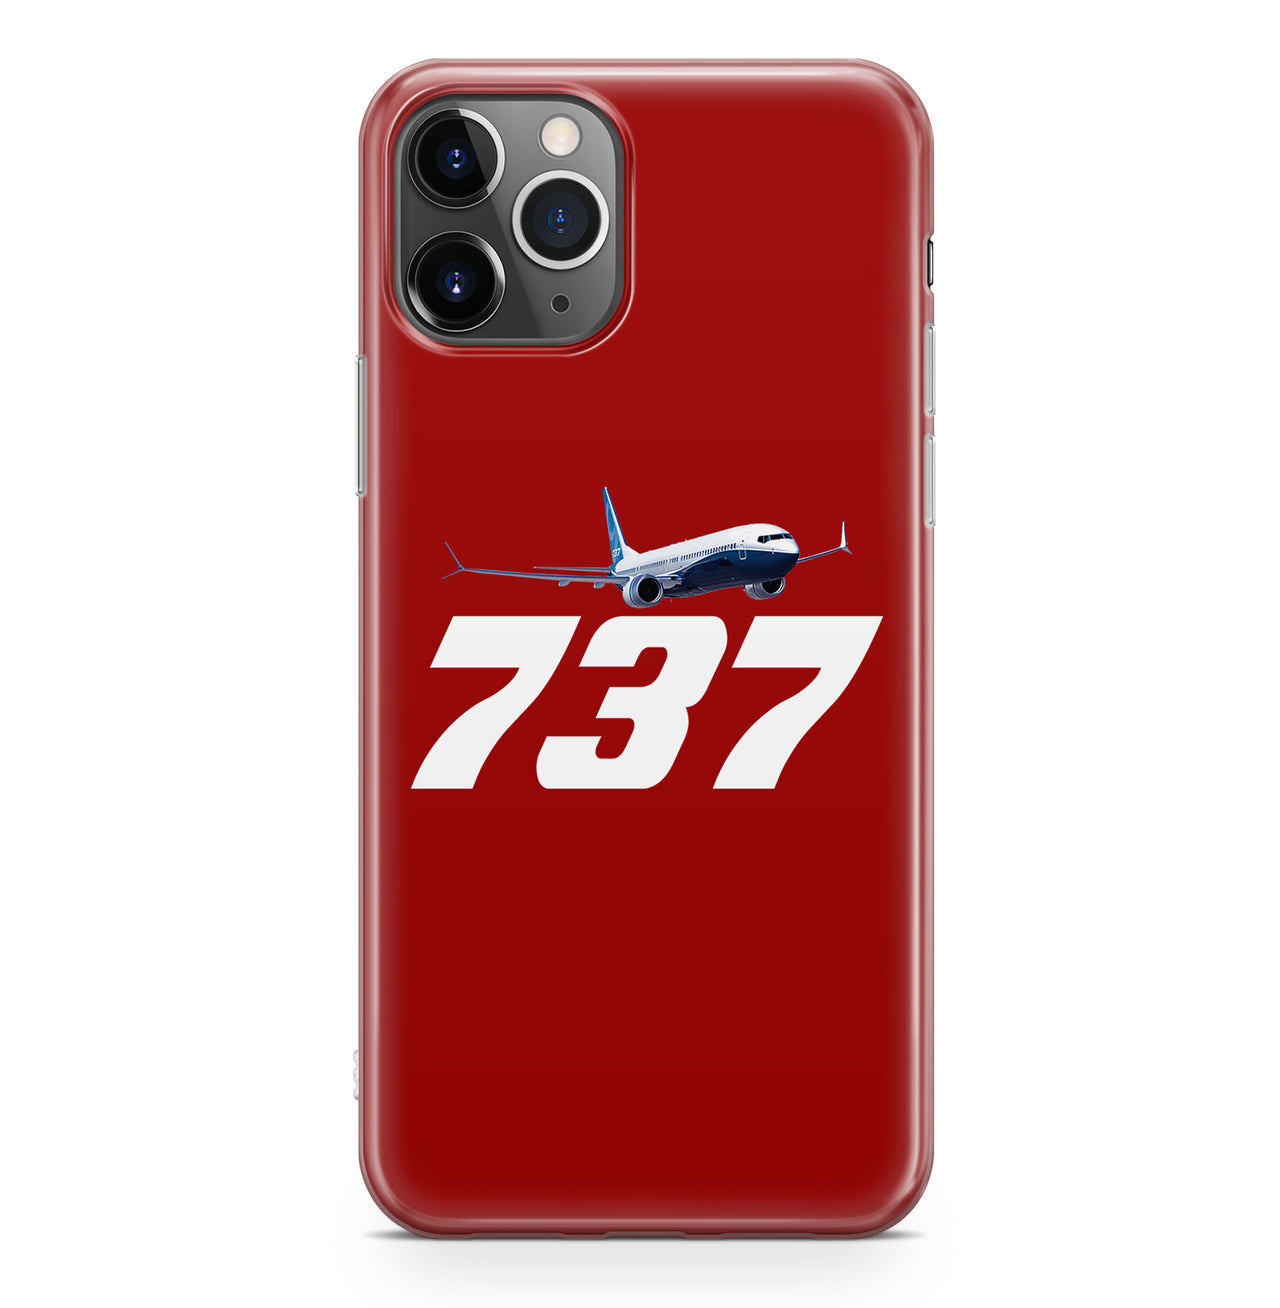 Super Boeing 737-800 Designed iPhone Cases